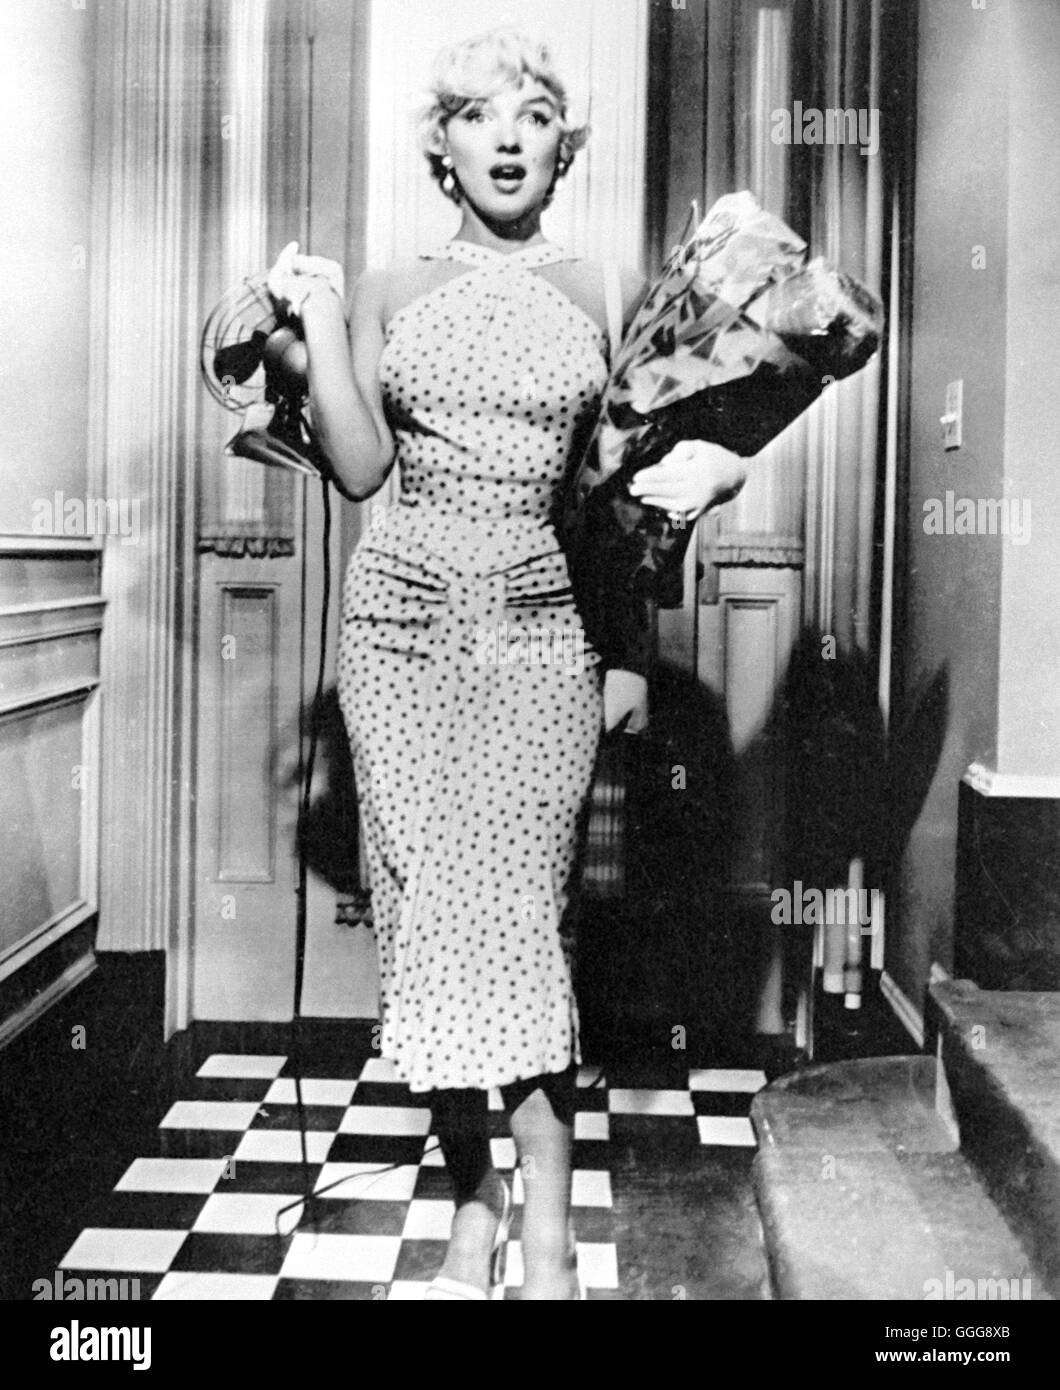 DAS VERFLIXTE 7. JAHR / The Seven Year Itch USA 1955 / Billy Wilder MARILYN MONROE, 'The Seven Year Itch', 1955. Regie: Billy Wilder aka. The Seven Year Itch Stock Photo